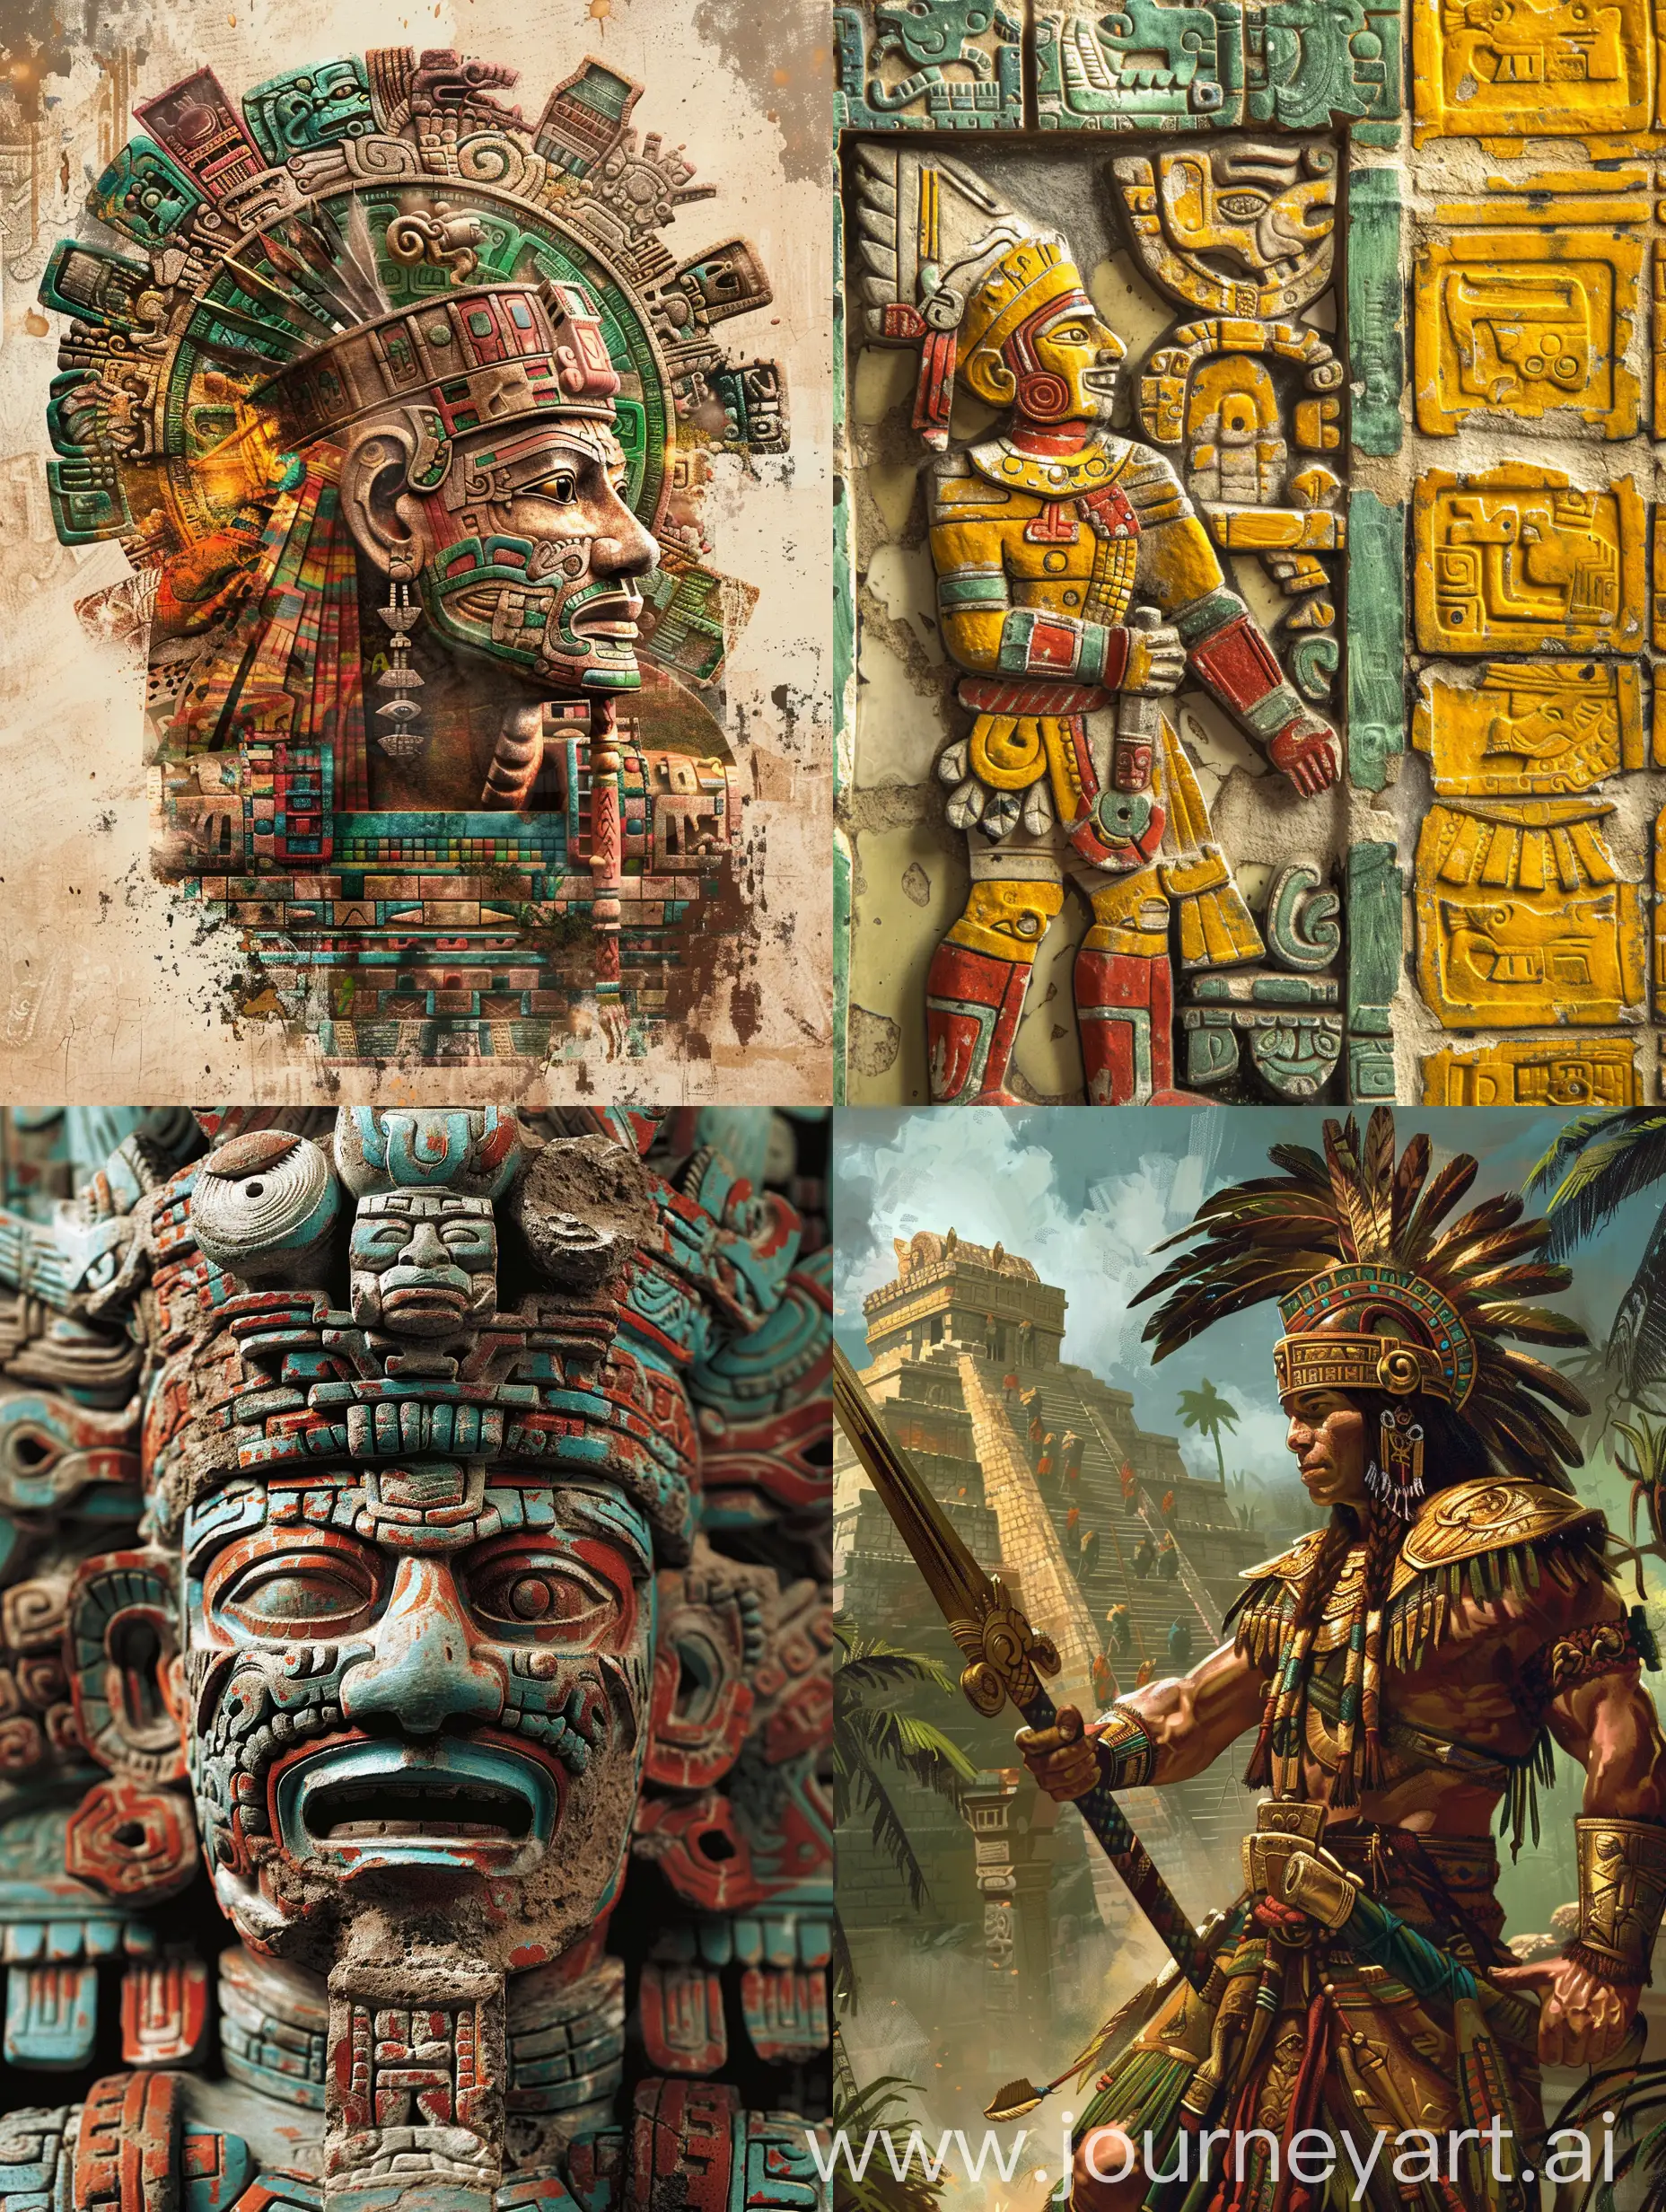 Mayan civilization